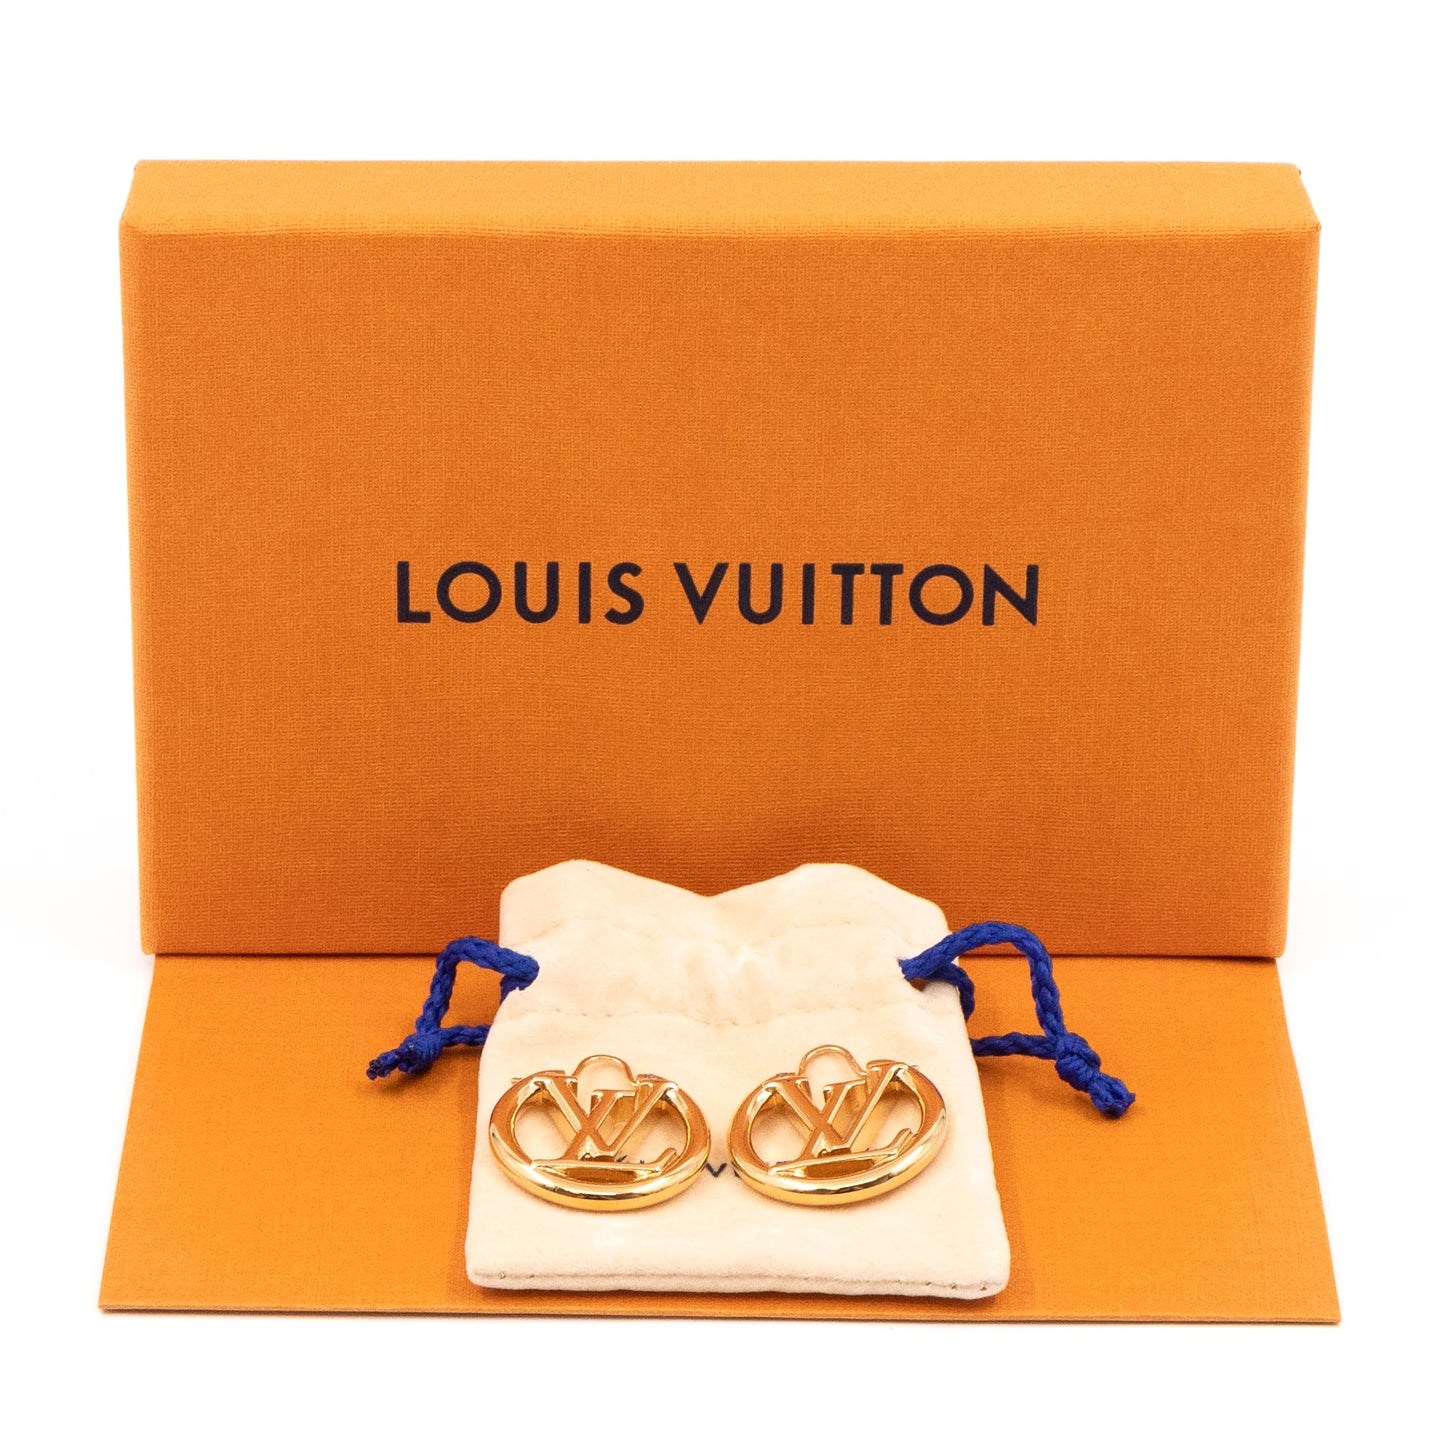 Louise PM Earrings - Luxury S00 Gold